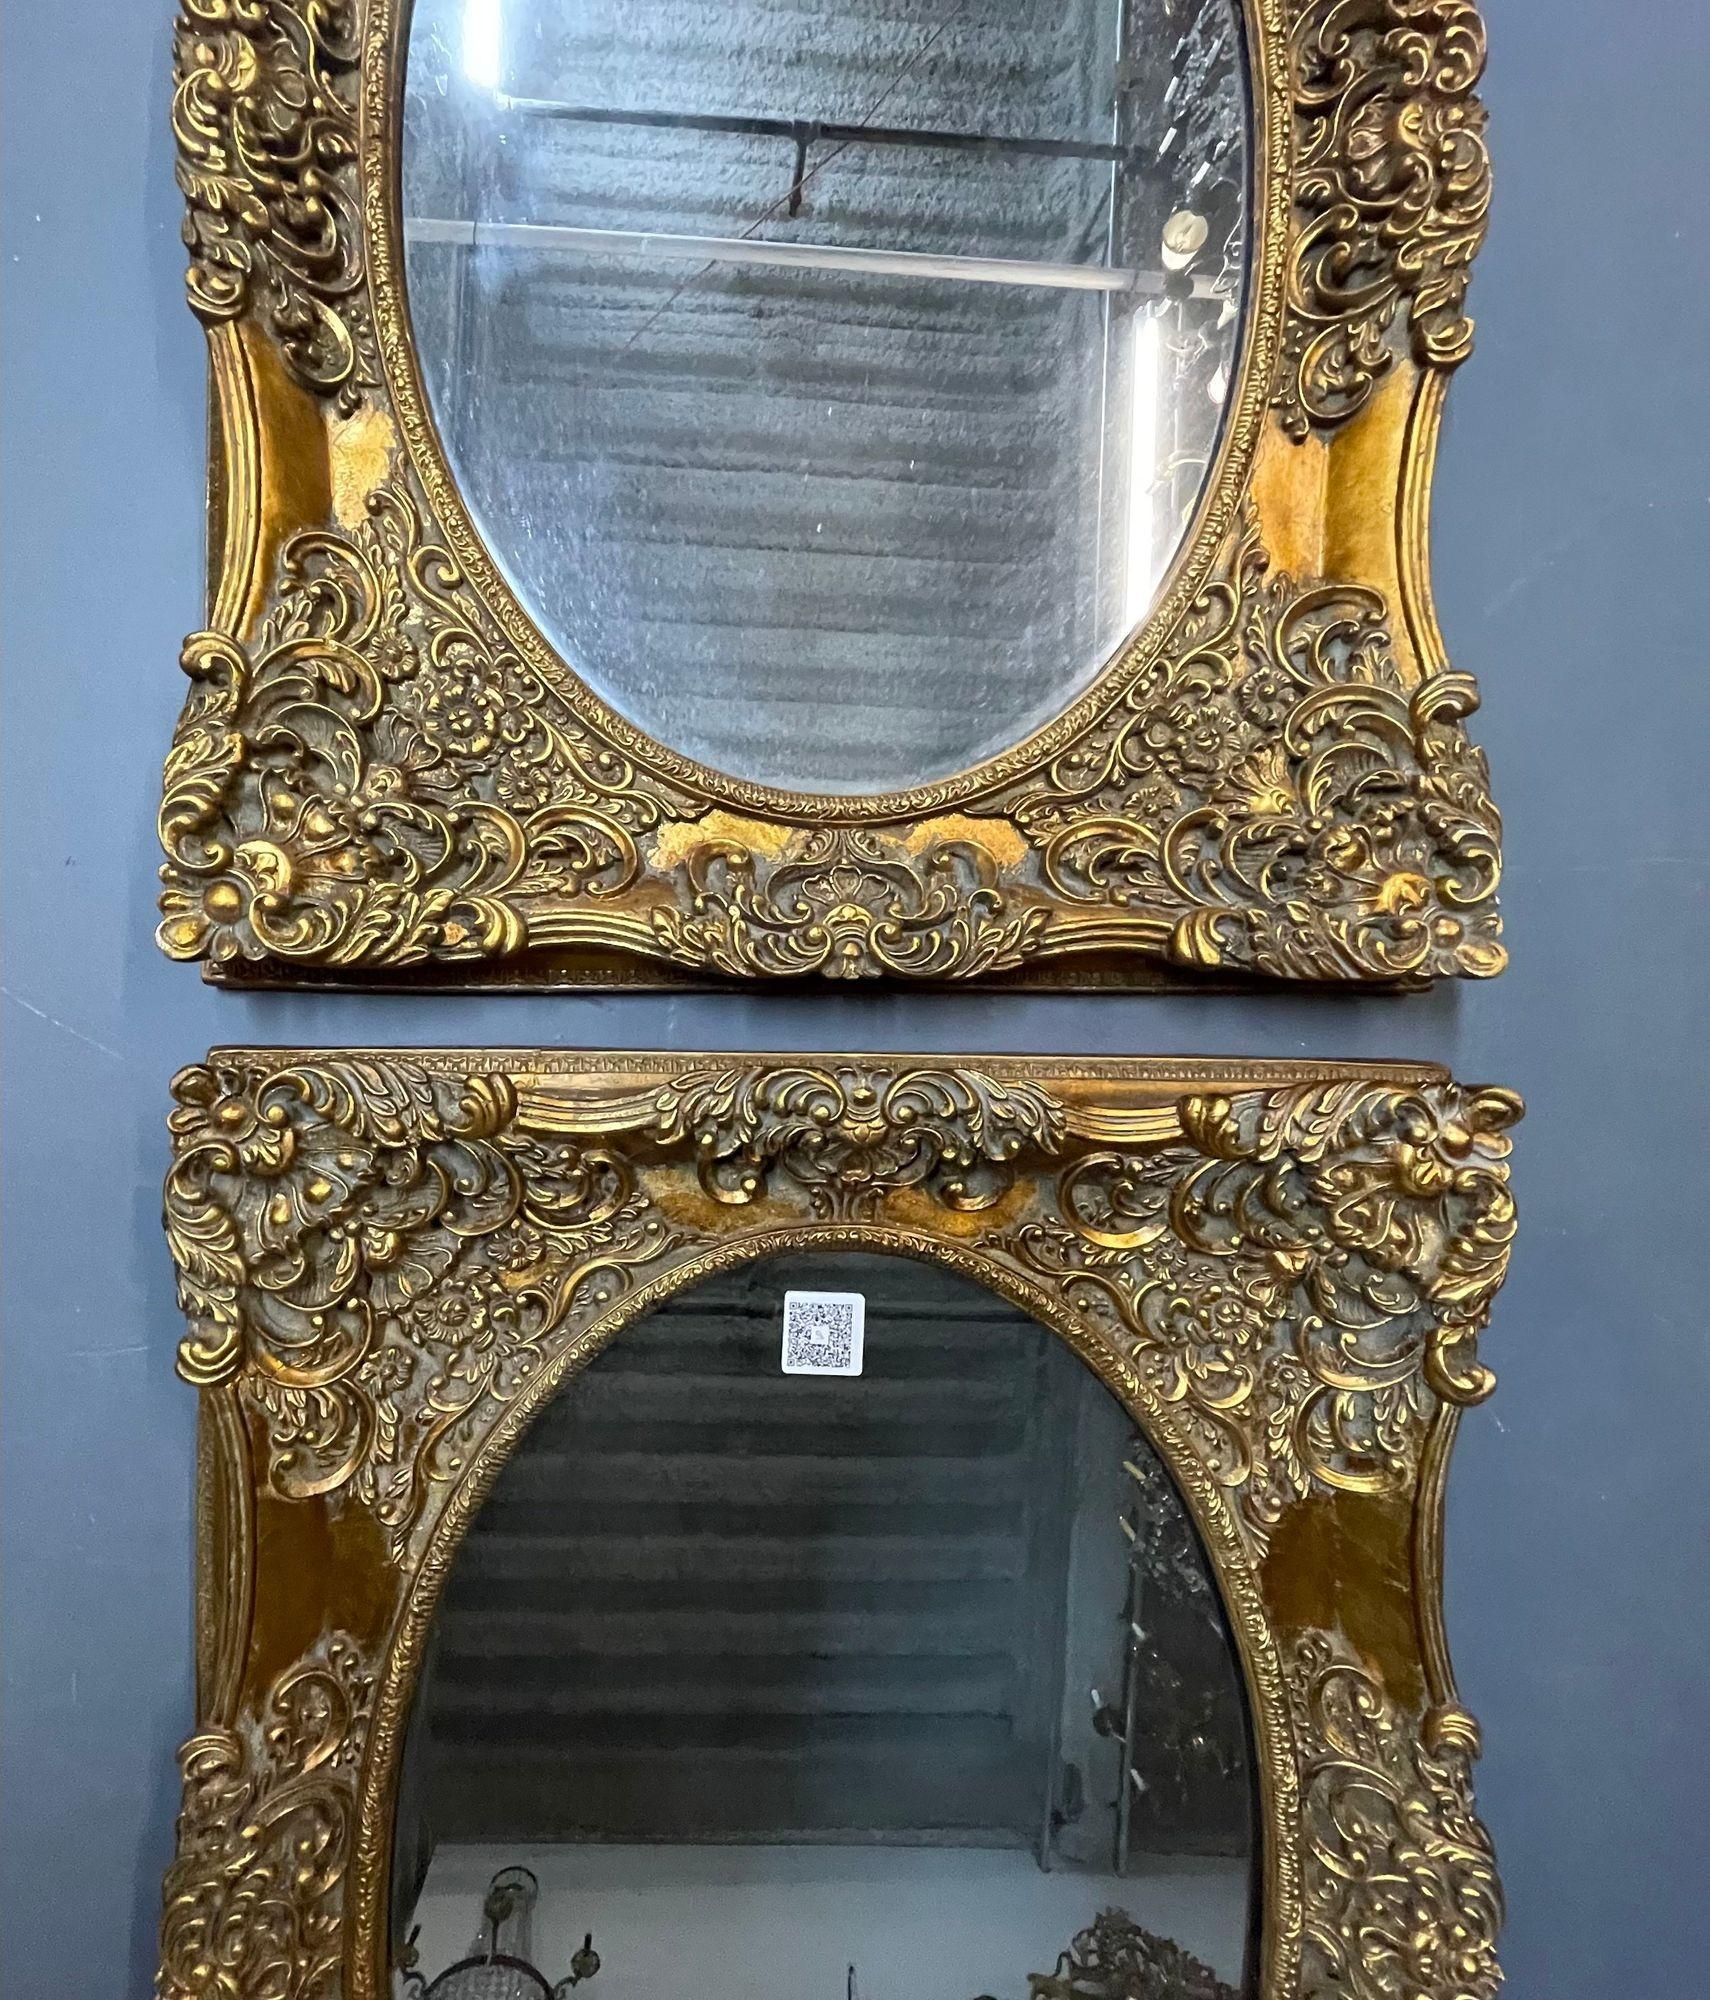 Paire de miroirs muraux et de consoles sculptés de style Louis XV

Une paire de miroirs muraux, de console ou de cheminée de style Louis XV finement sculptés. Des volutes et des rosettes finement modelées embellissent les cadres rectangulaires qui